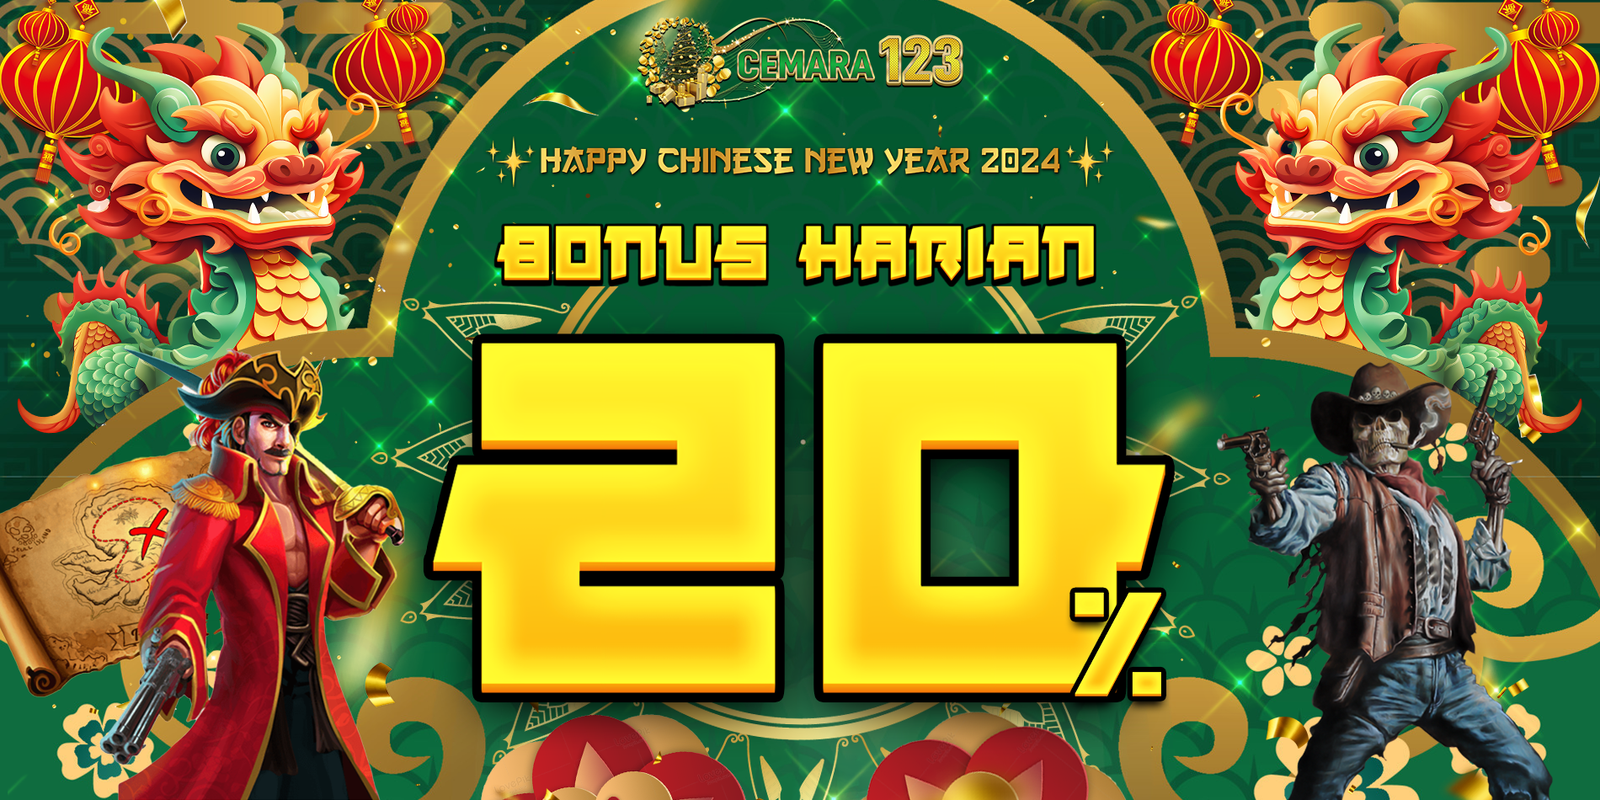 Bonus Harian 20% Cemara123